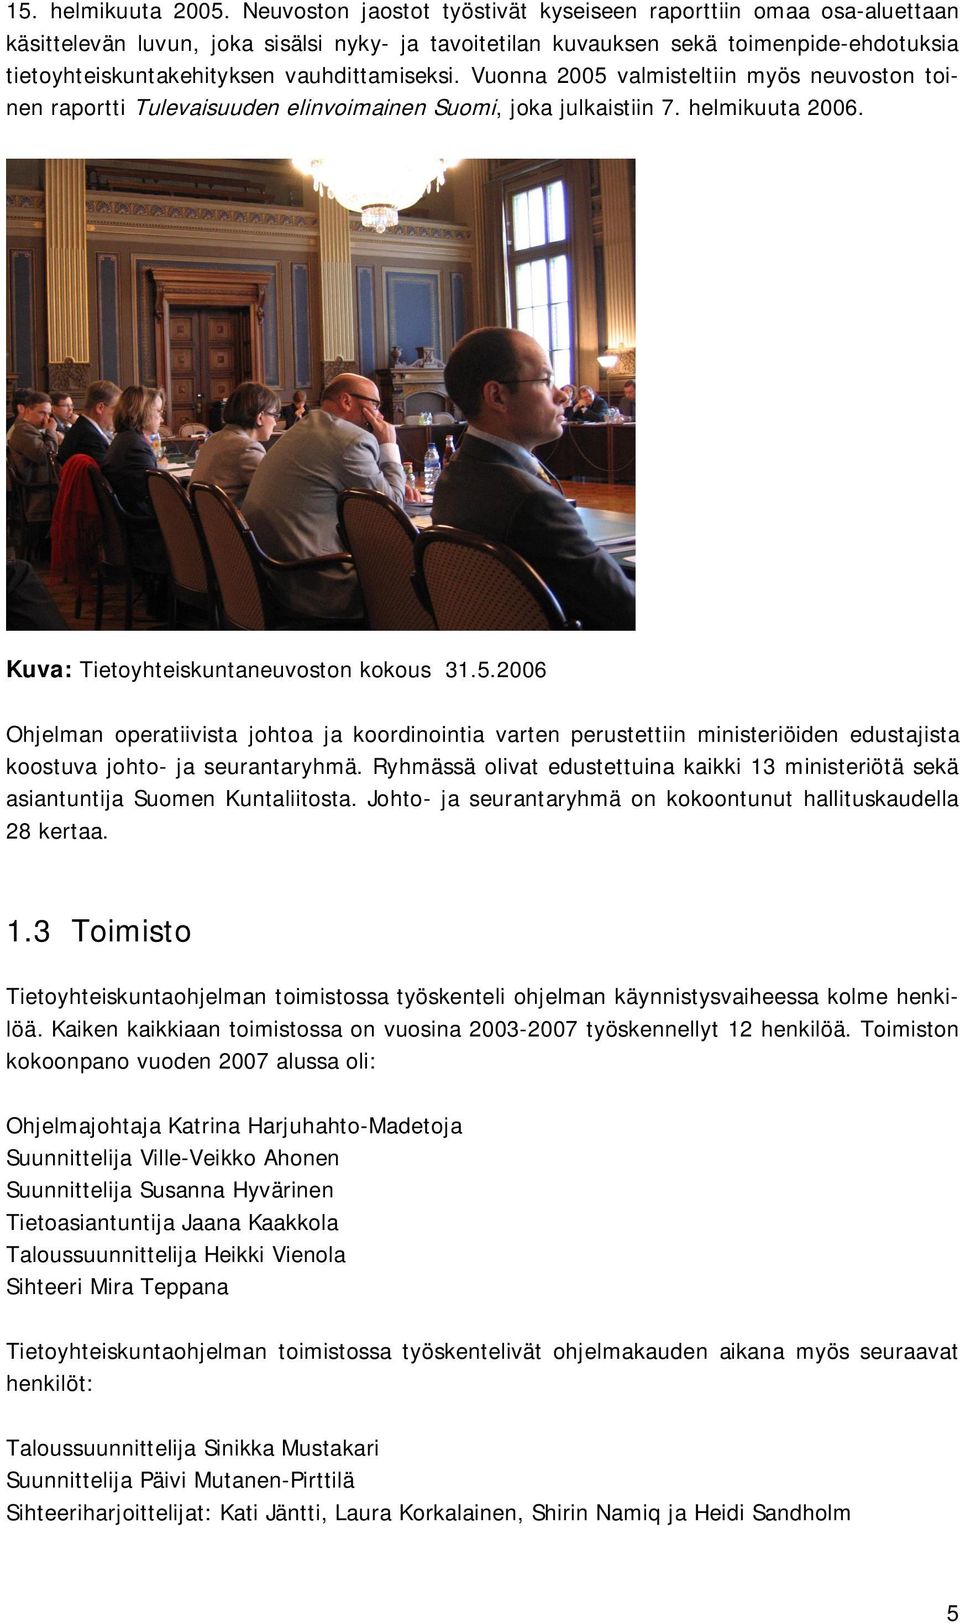 vauhdittamiseksi. Vuonna 2005 valmisteltiin myös neuvoston toinen raportti Tulevaisuuden elinvoimainen Suomi, joka julkaistiin 7. helmikuuta 2006. Kuva: Tietoyhteiskuntaneuvoston kokous 31.5.2006 Ohjelman operatiivista johtoa ja koordinointia varten perustettiin ministeriöiden edustajista koostuva johto- ja seurantaryhmä.